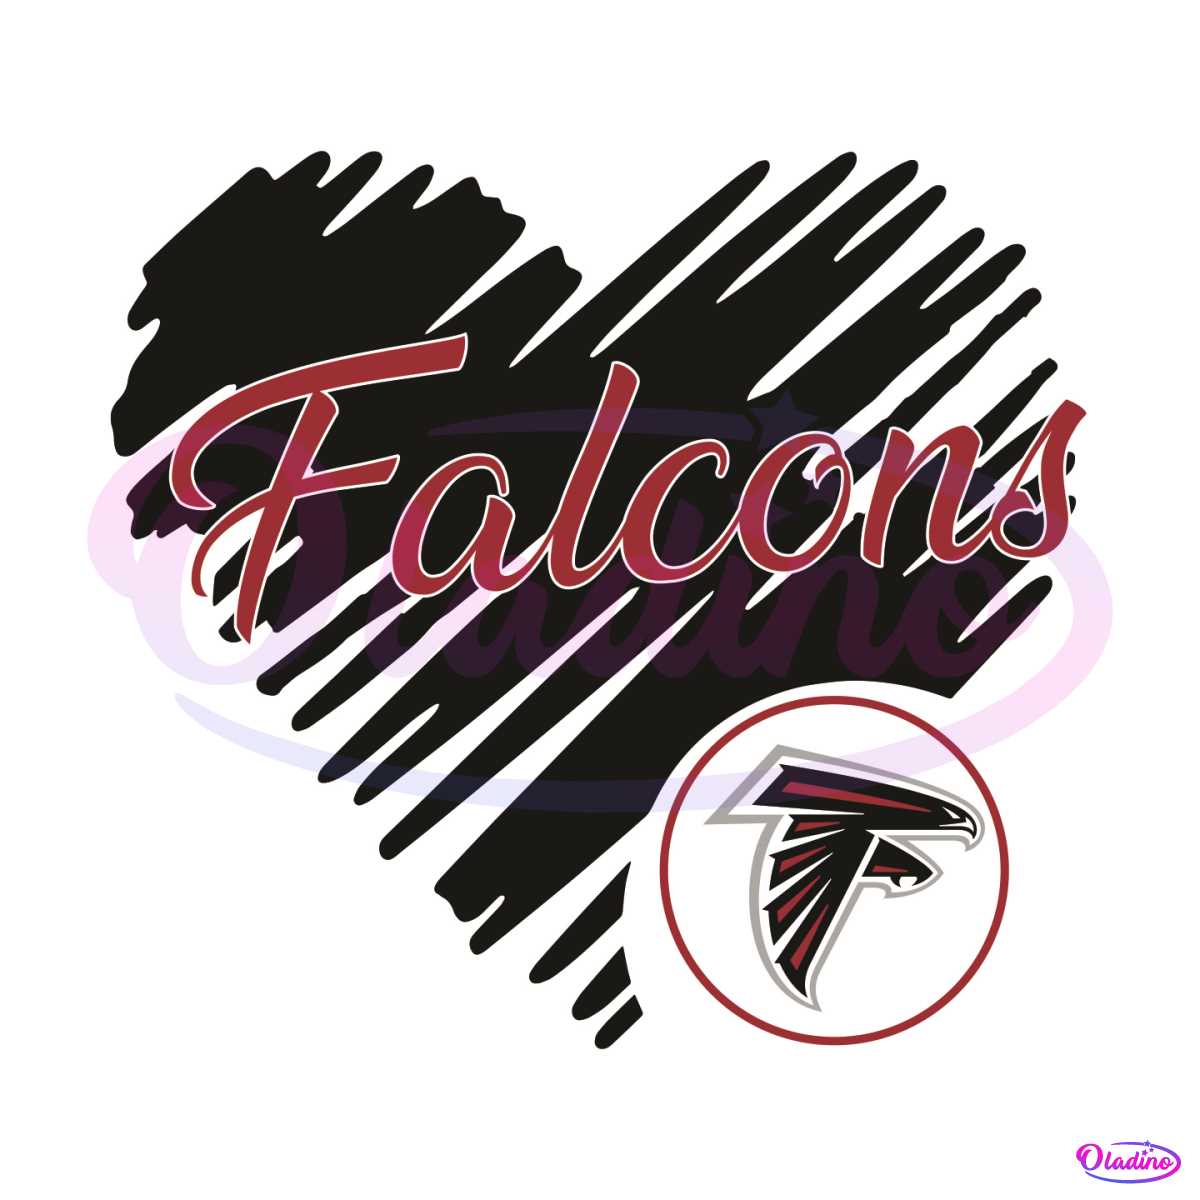 falcons symbol nfl